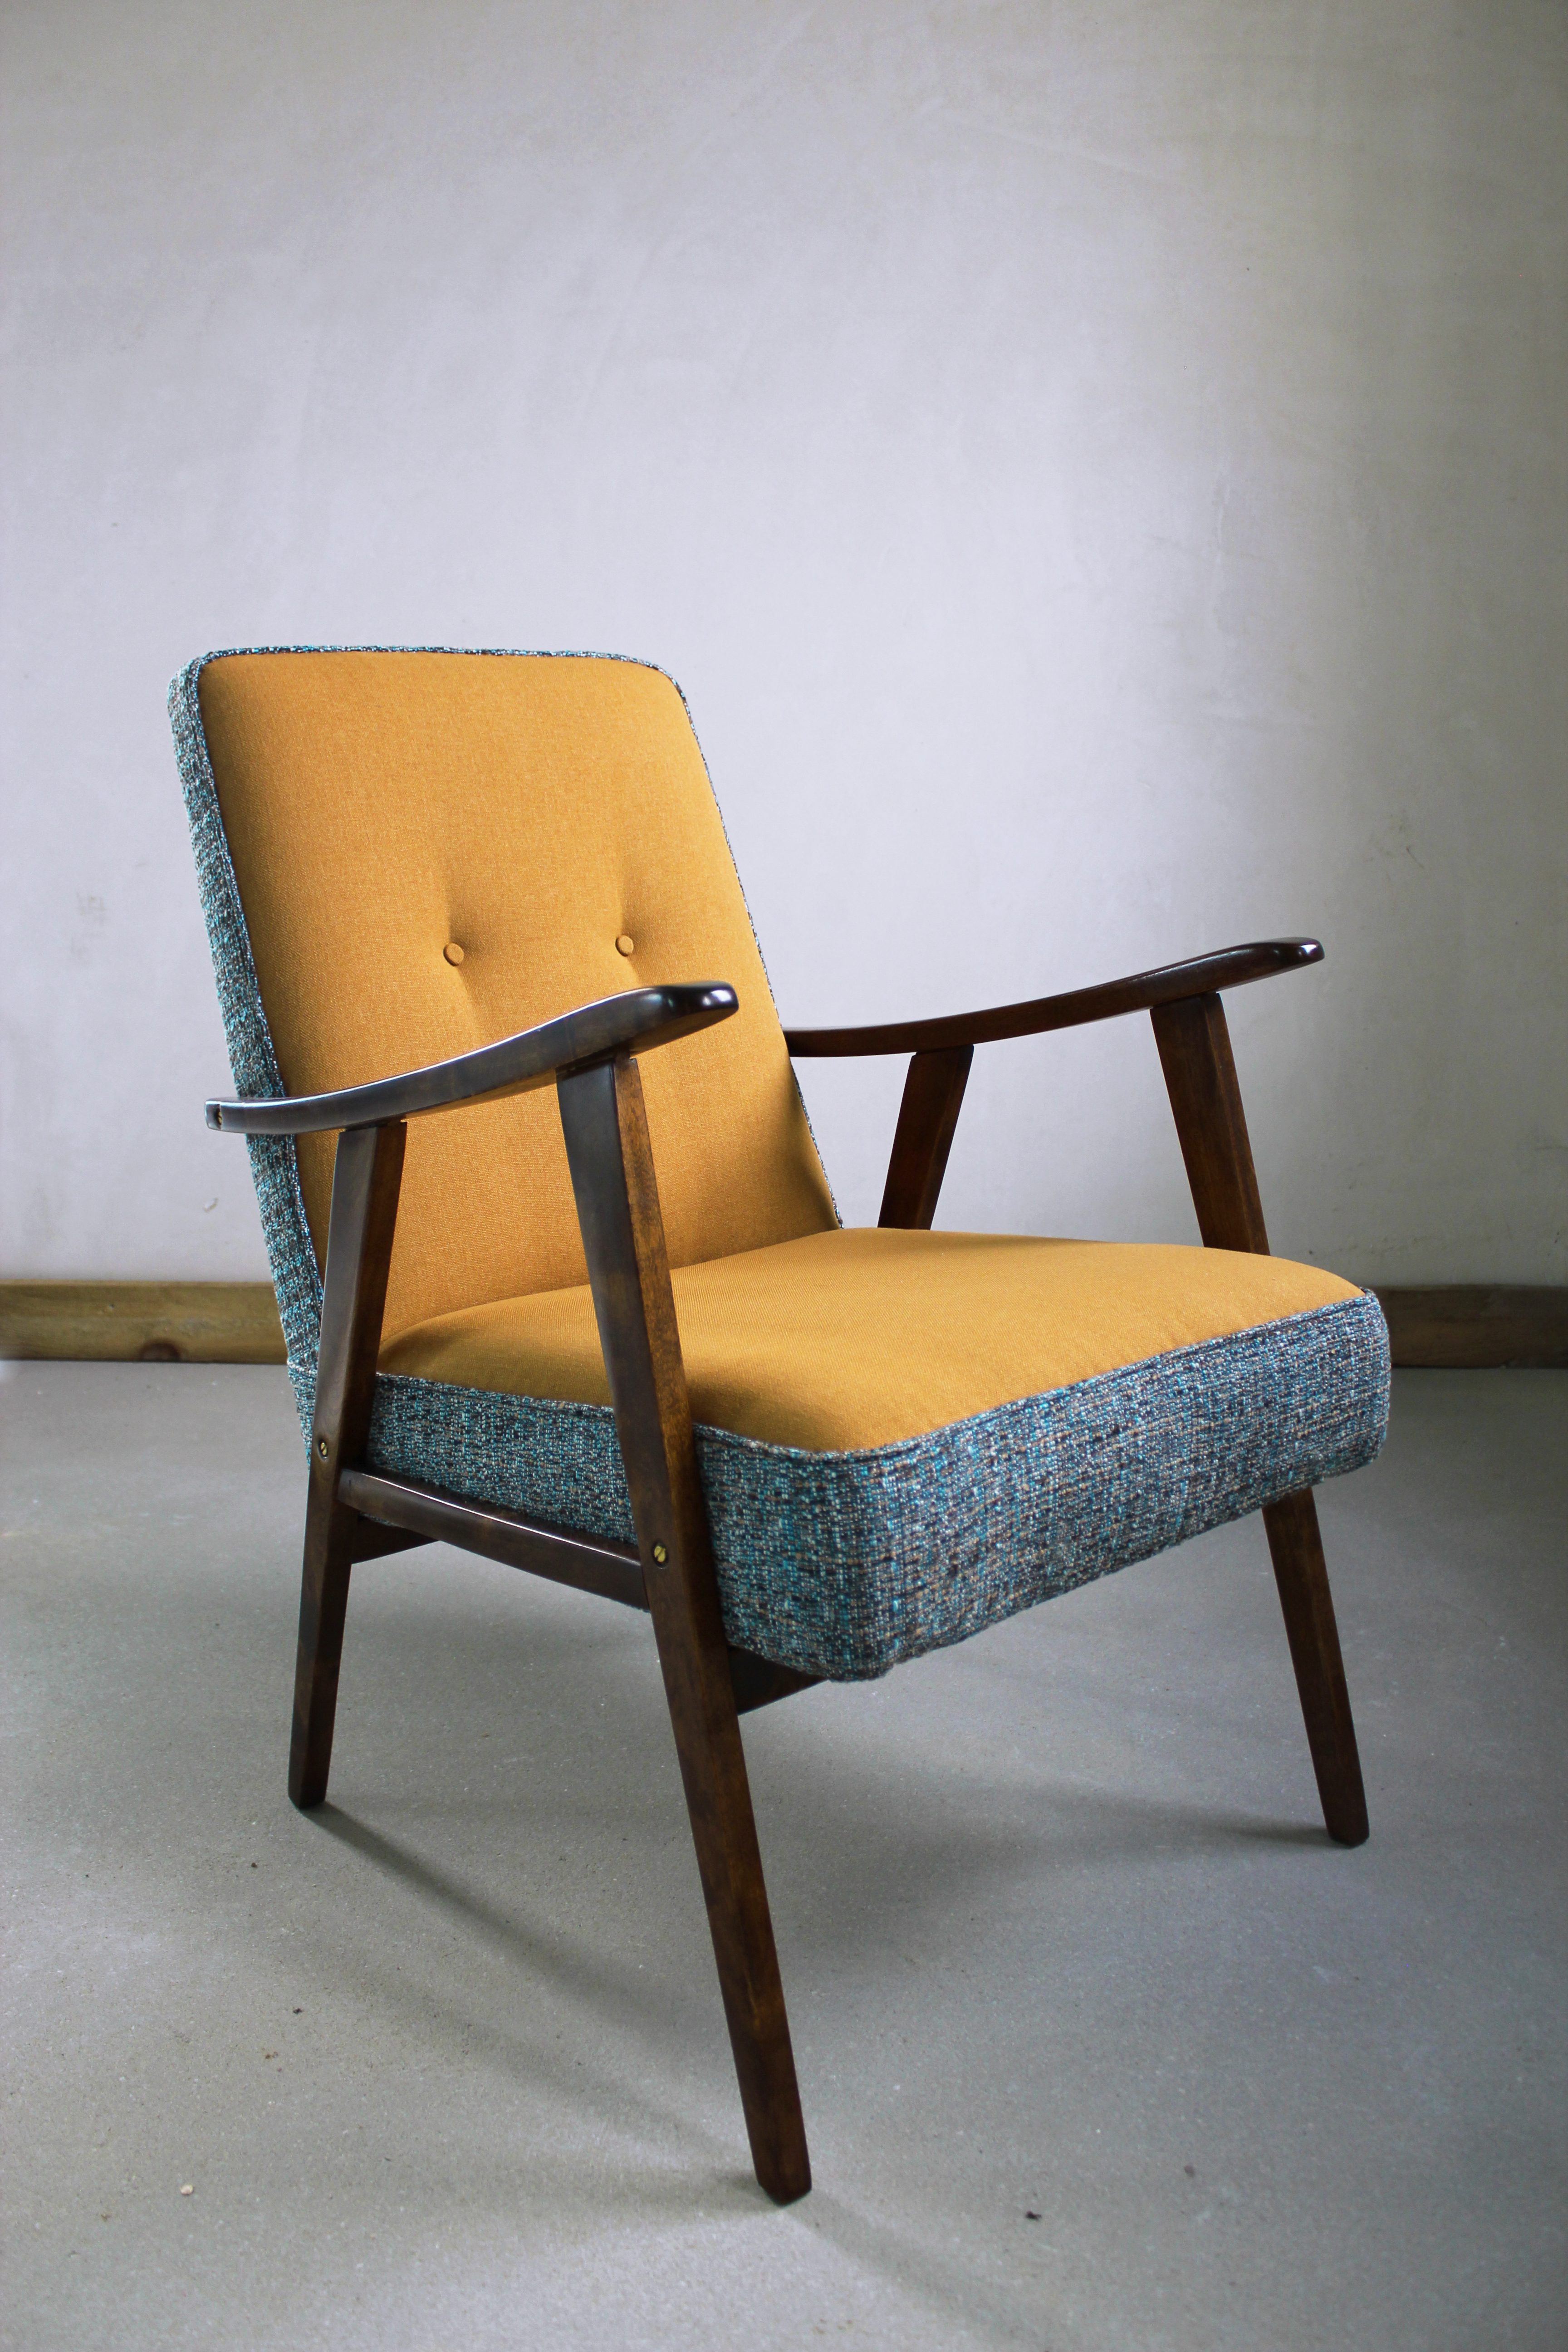 Fotel z lat 70., znaleziony przy śmietniku. Odrestaurowany z wykorzystaniem kolorowych tkanin, drewno brzozowe w politurze